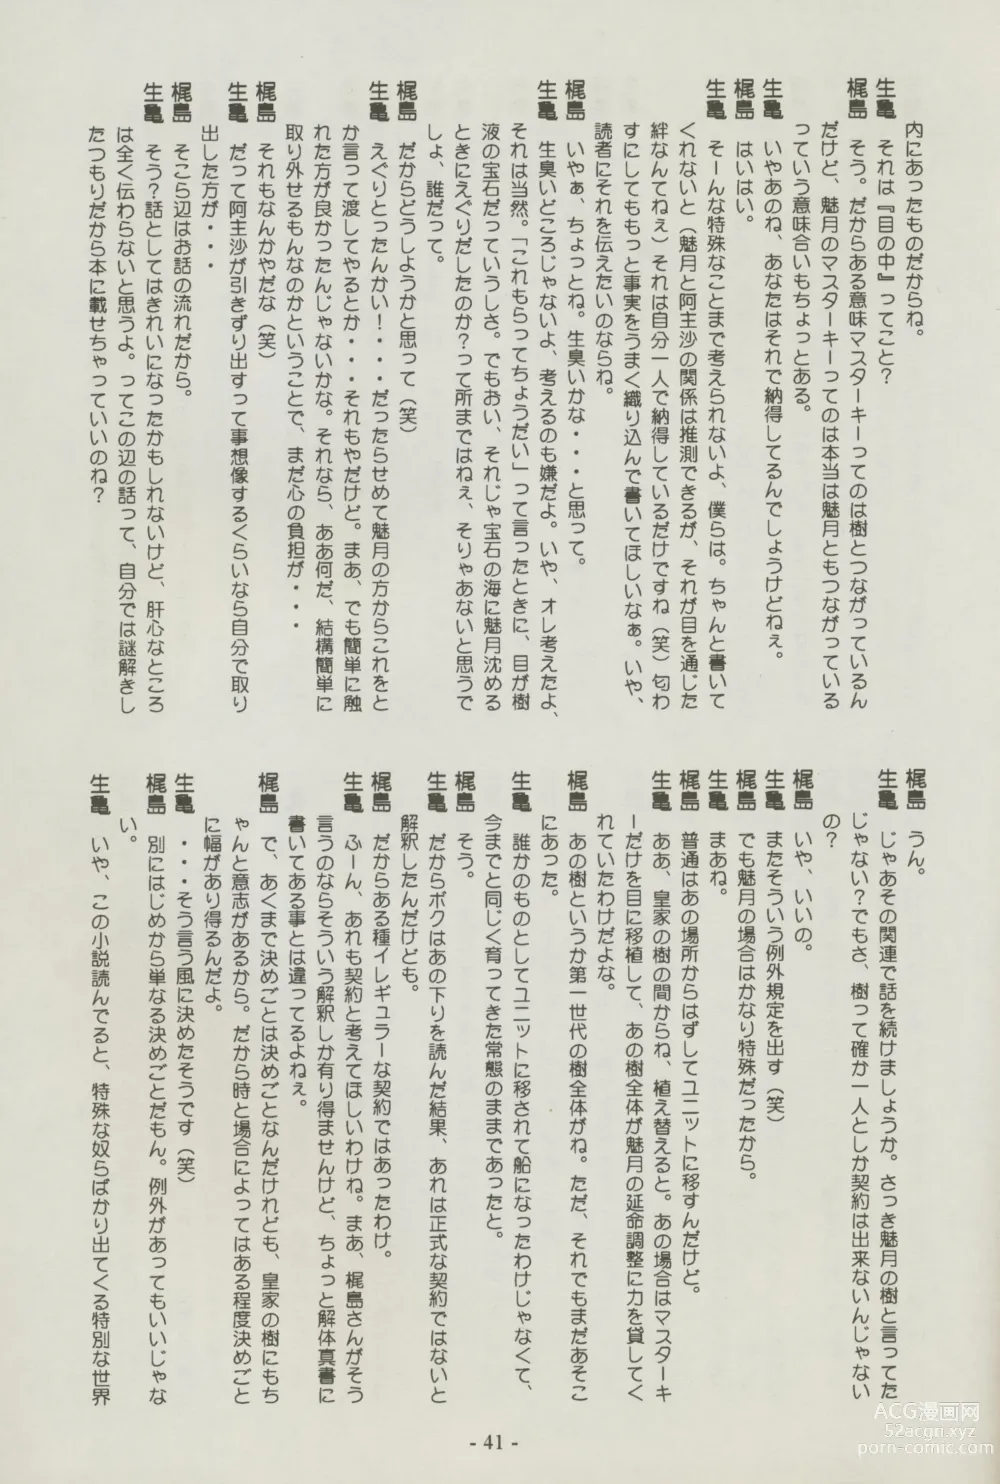 Page 41 of doujinshi Shuppanroku